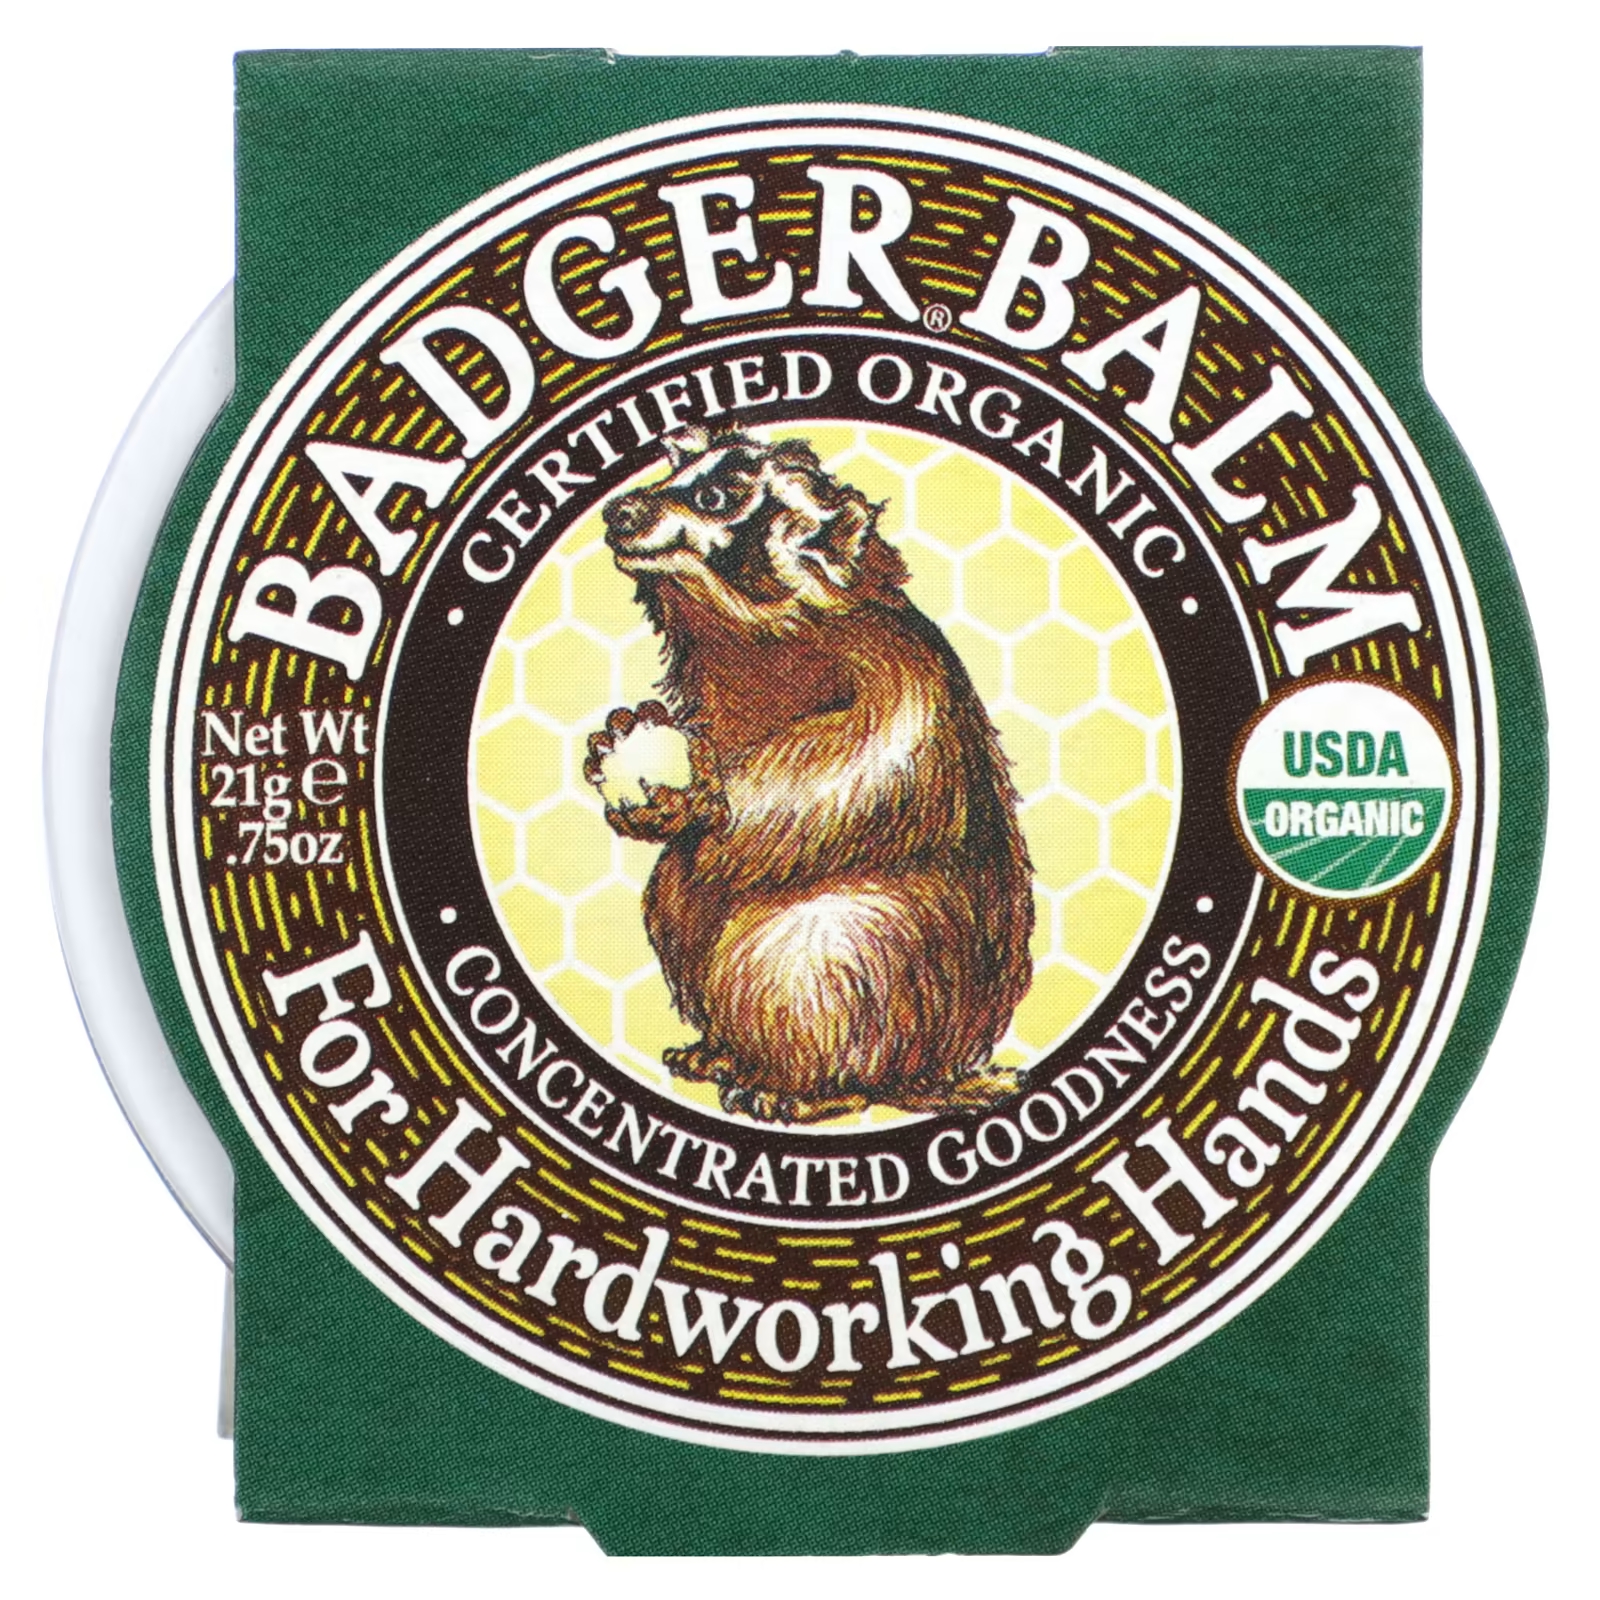 Органический бальзам Badger Company badger for hardworking hands, 21 гр. badger company органический бальзам для губ розовый грейпфрут 4 2 г